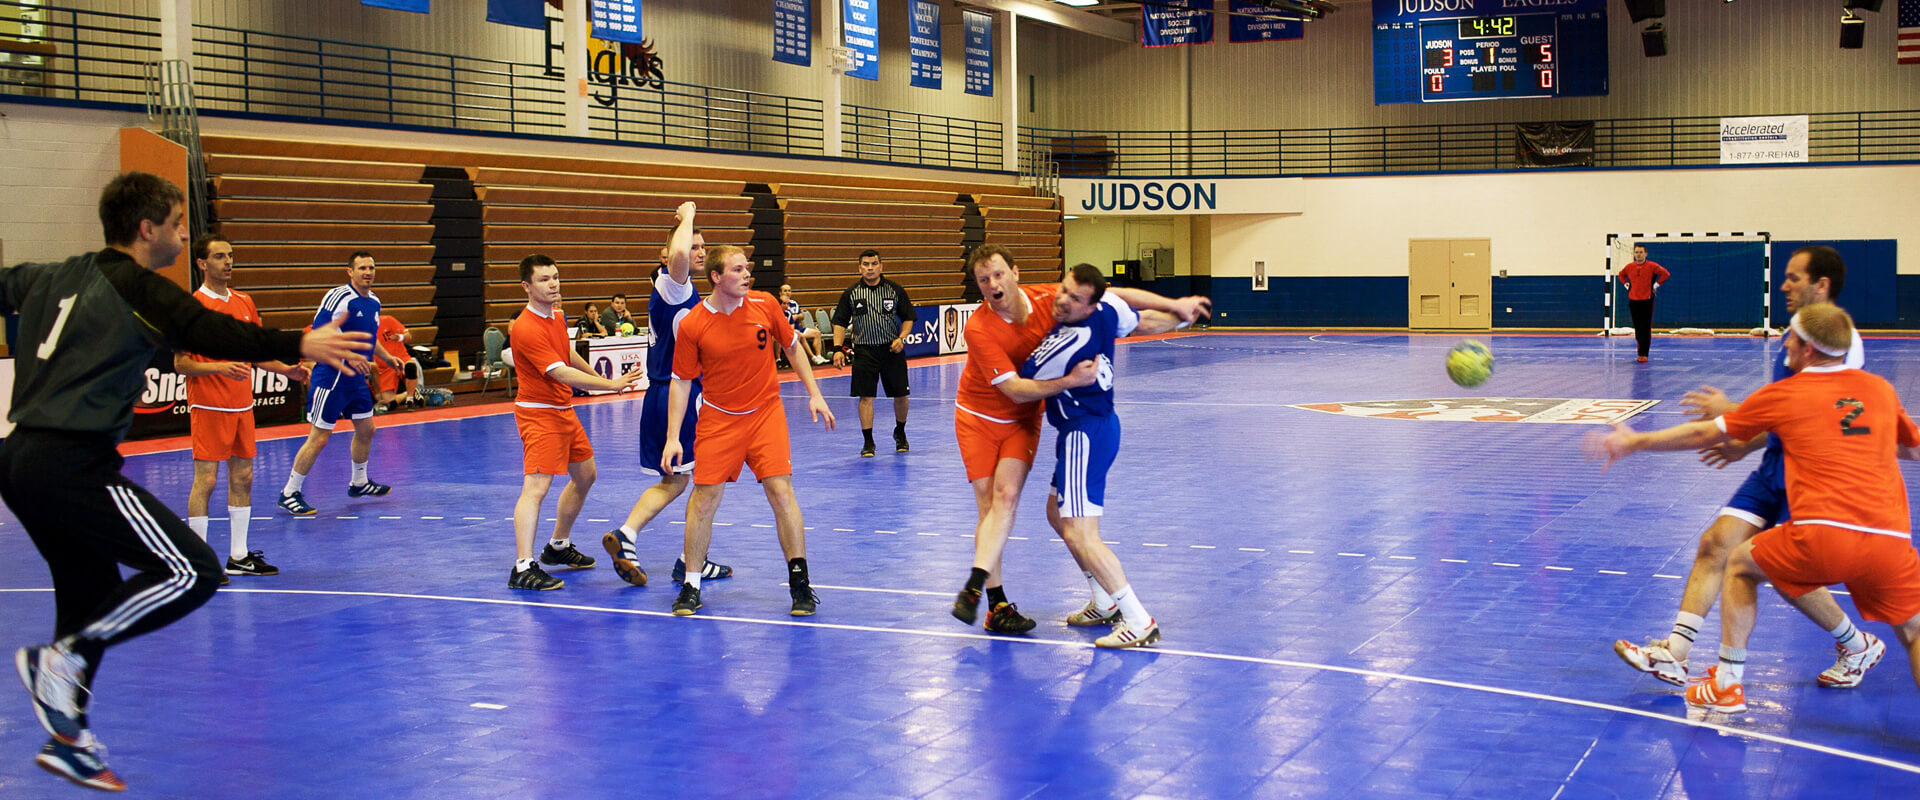 Commercial Handball Handball Courts | Team